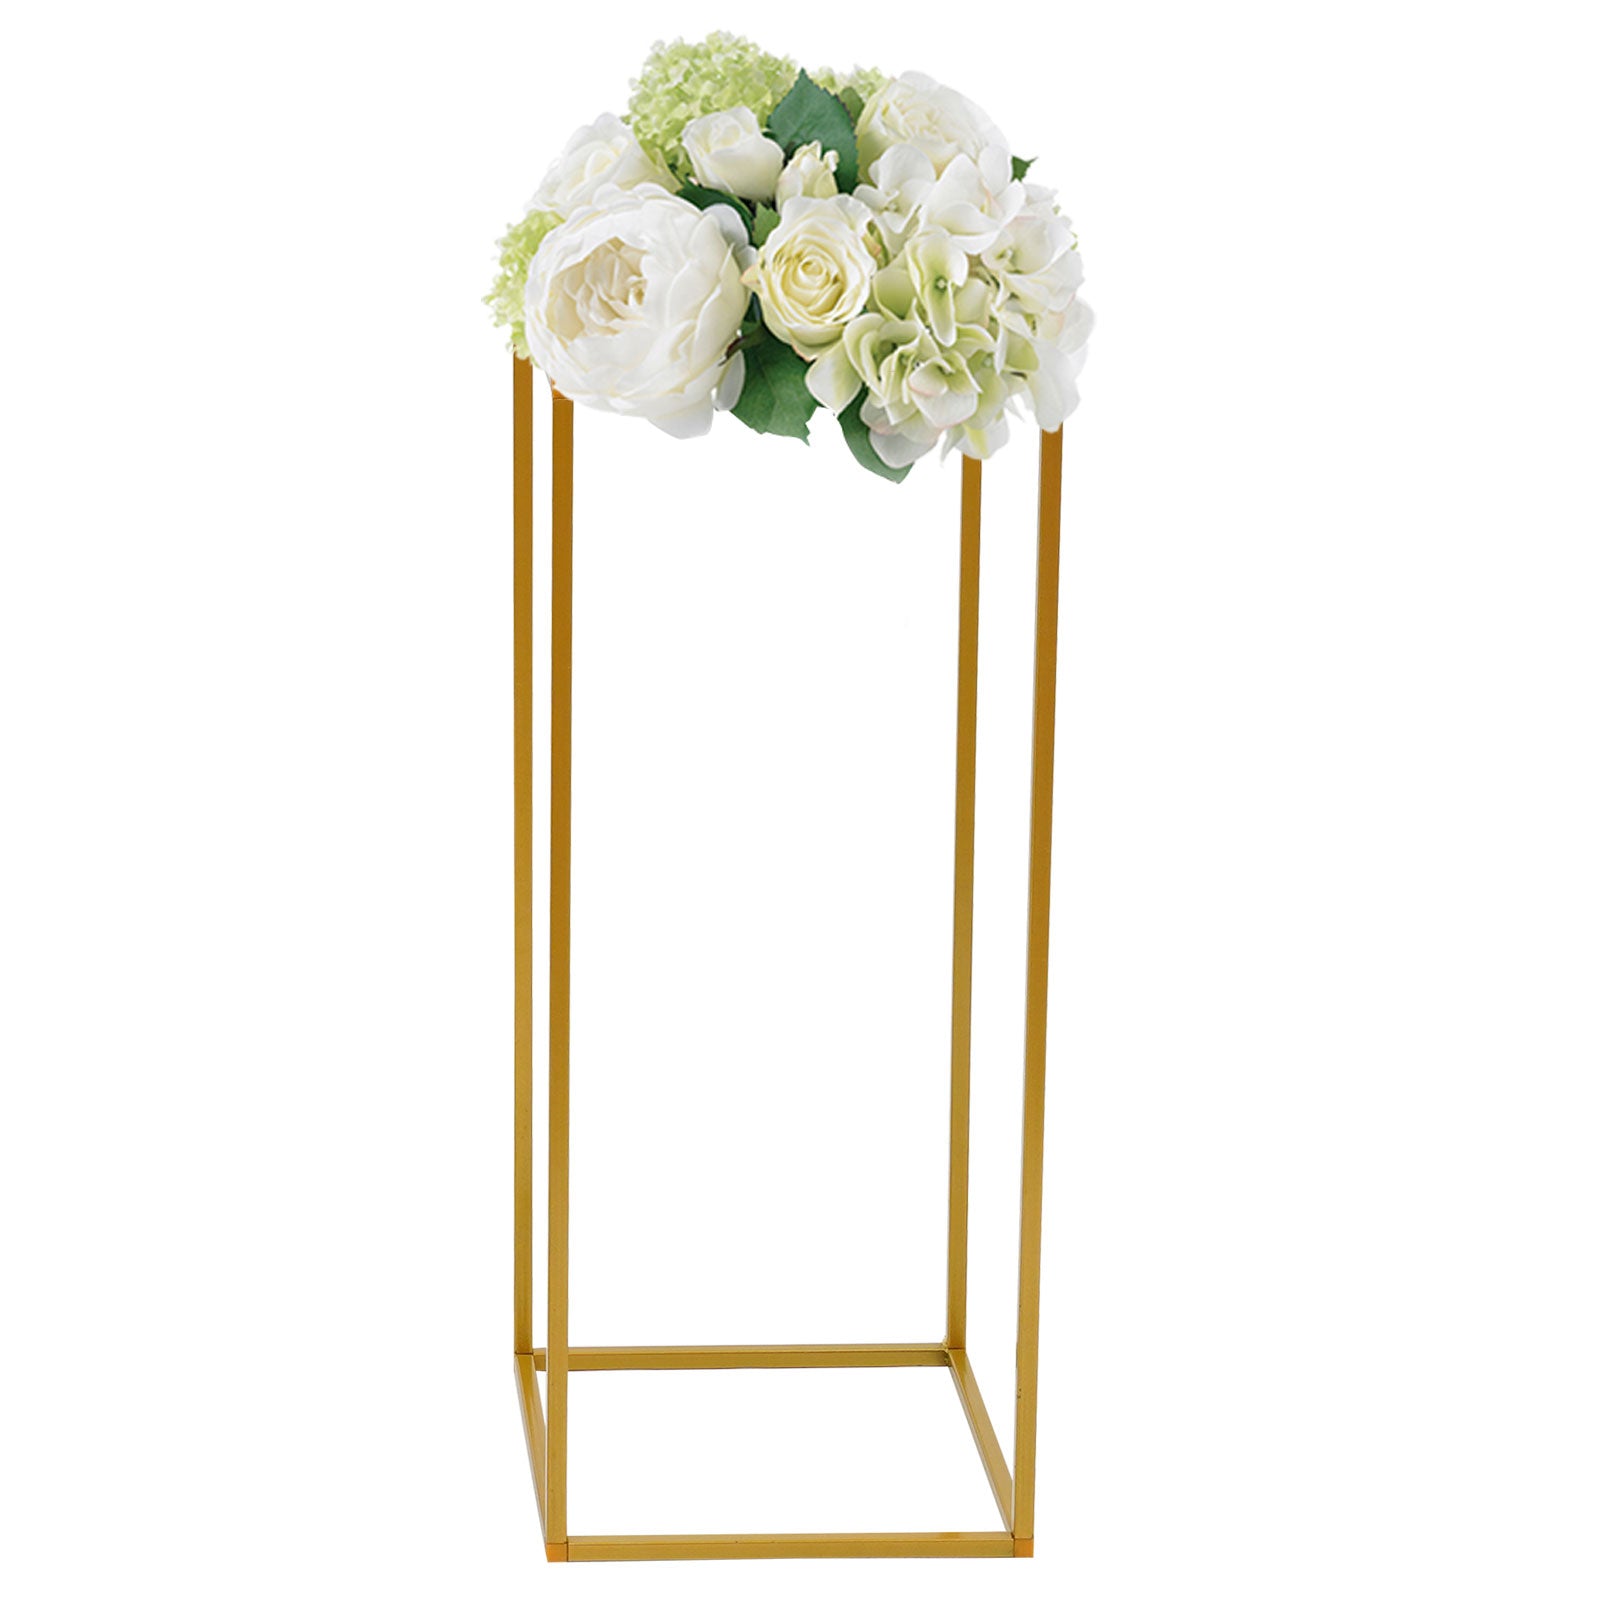 10 Stück 60cm Metall Pflanzenständer Blumenständer Hochzeit